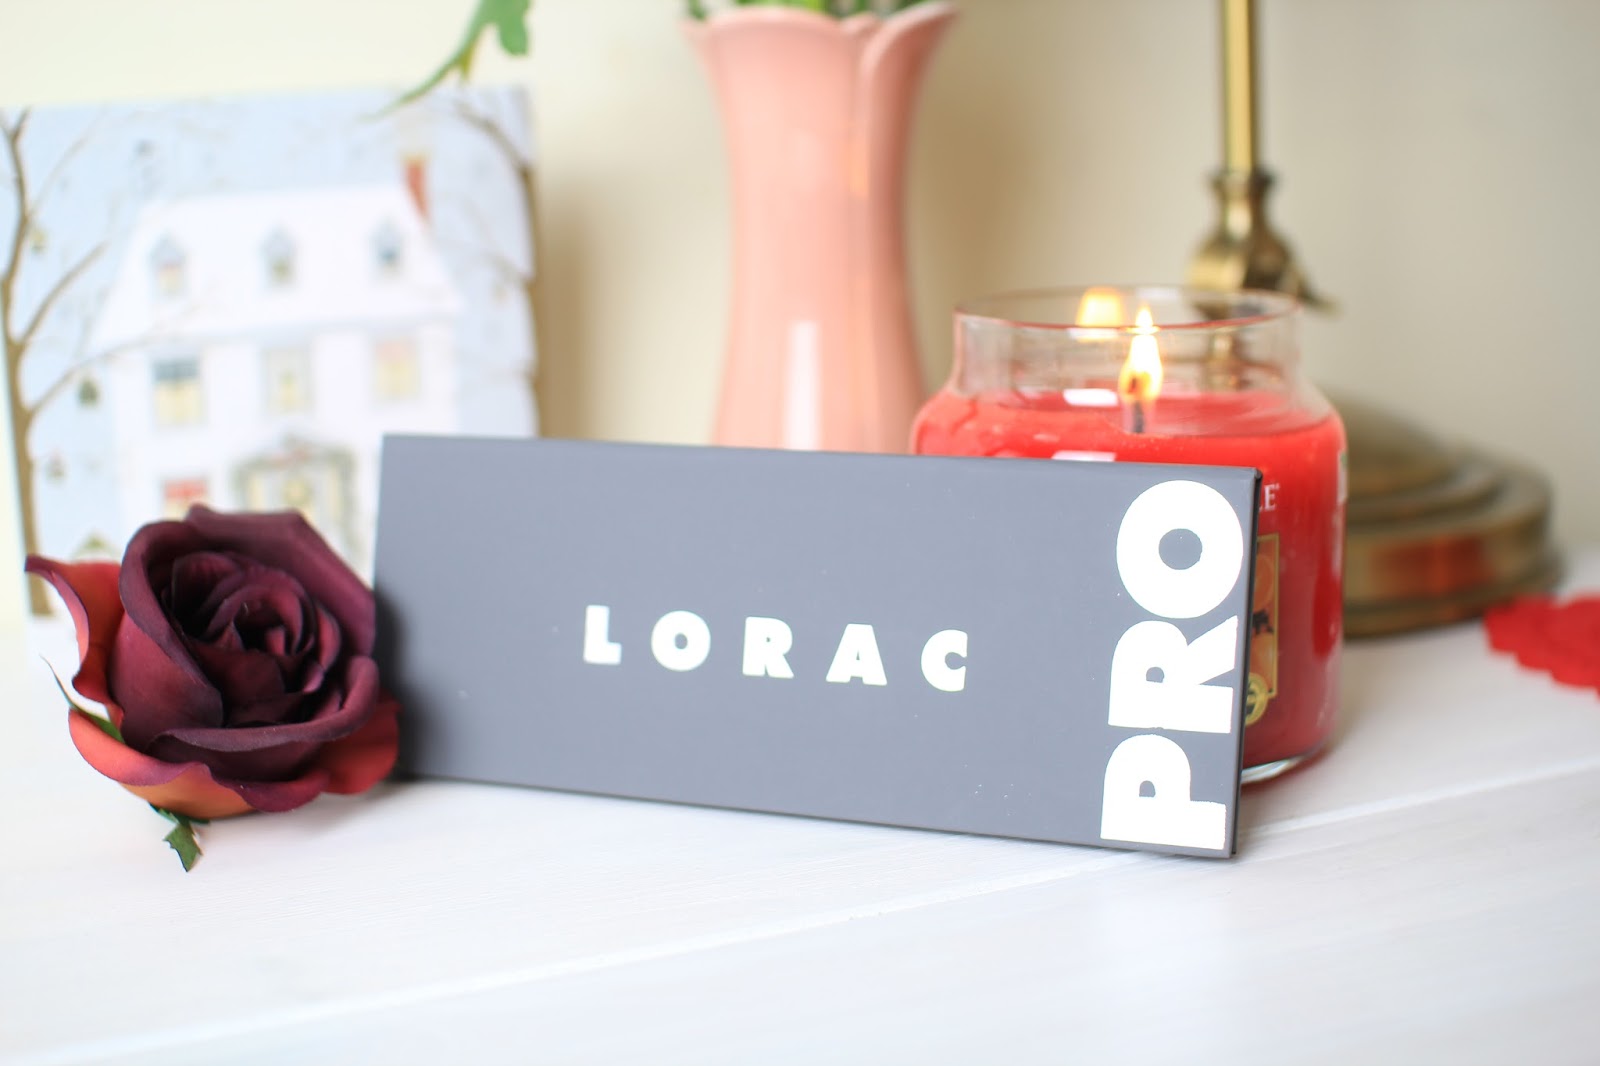 The Lorac Pro Palette 2